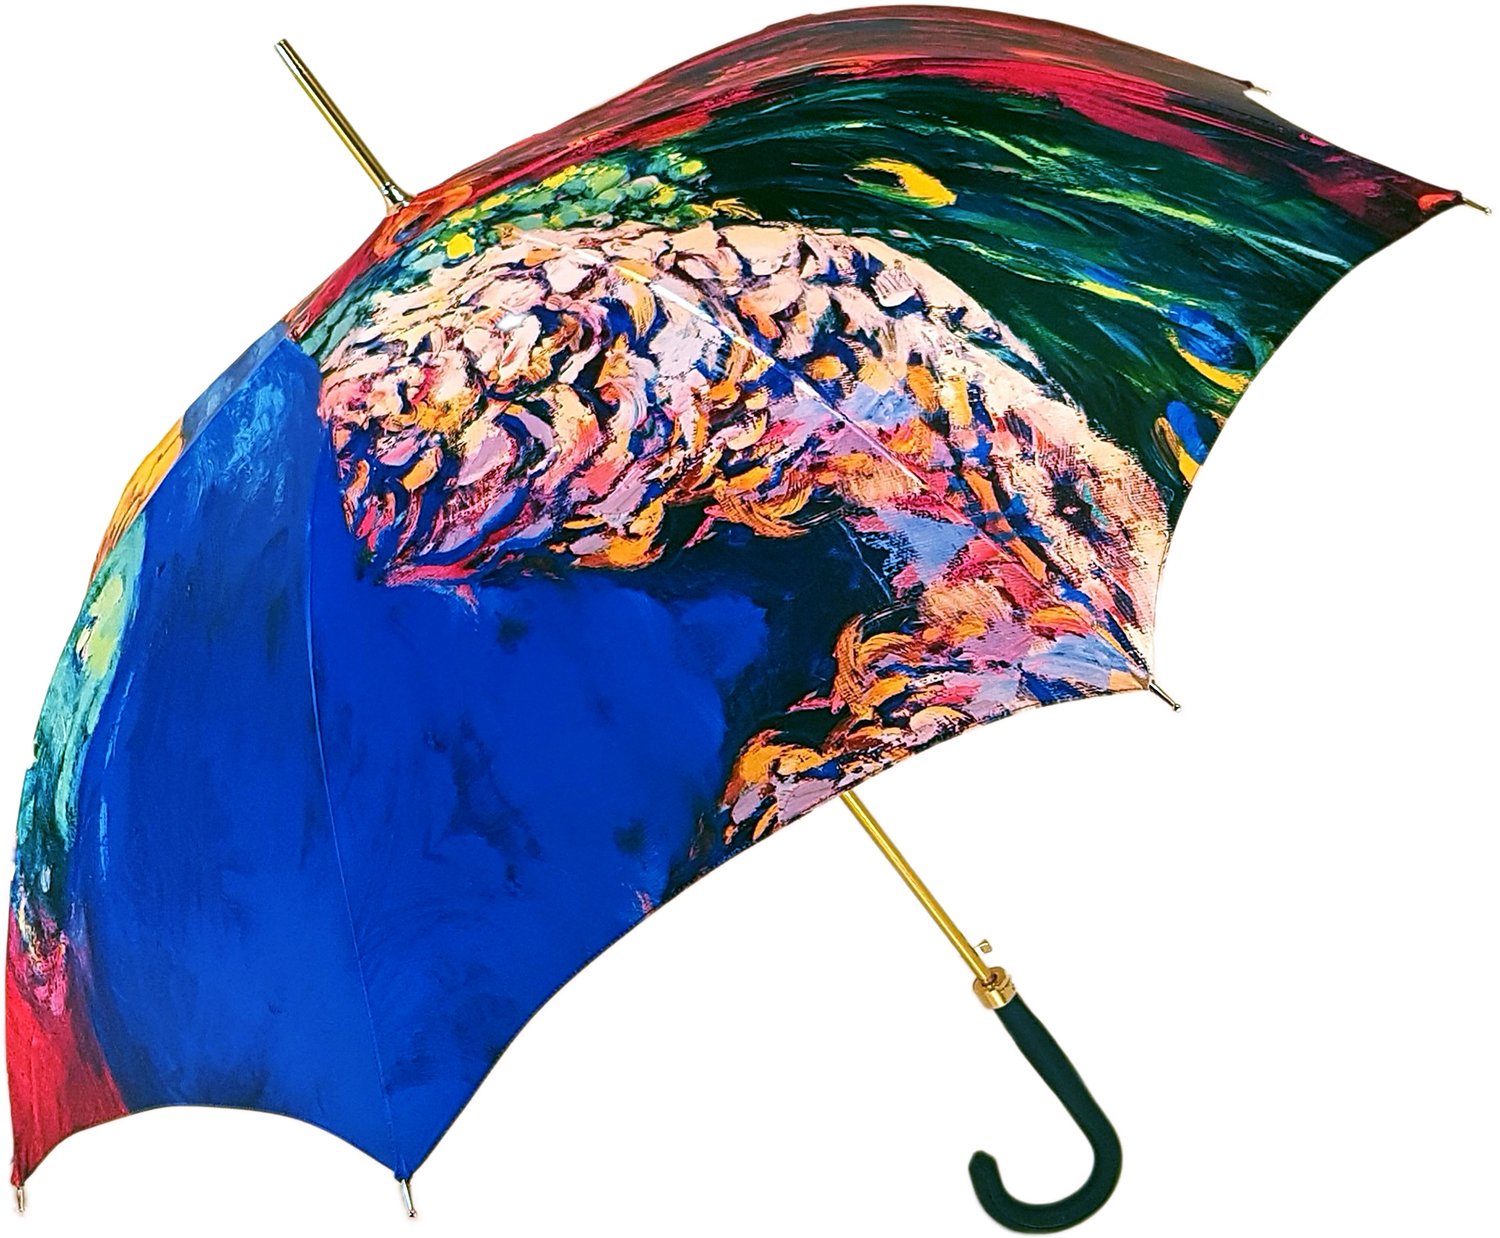 Peacock Painted Umbrella - il-marchesato